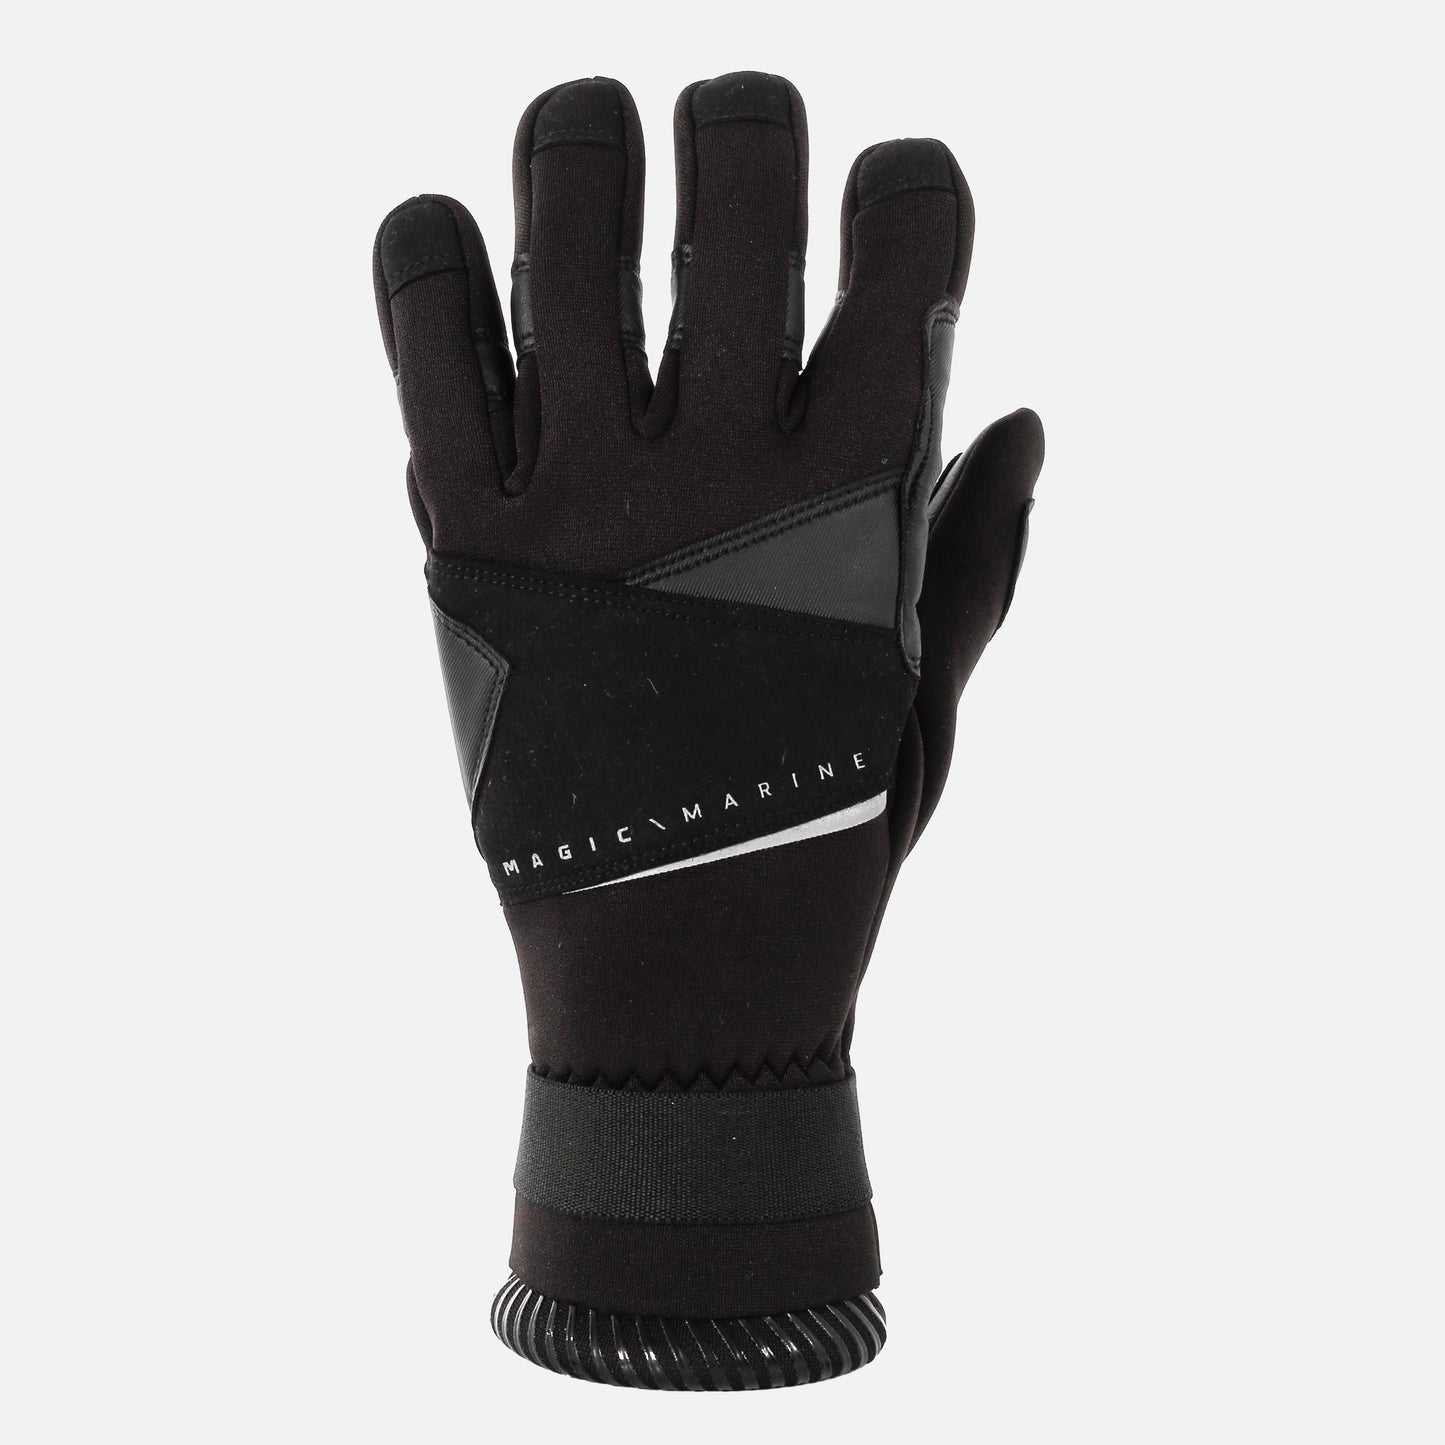 Frost Neoprene Gloves